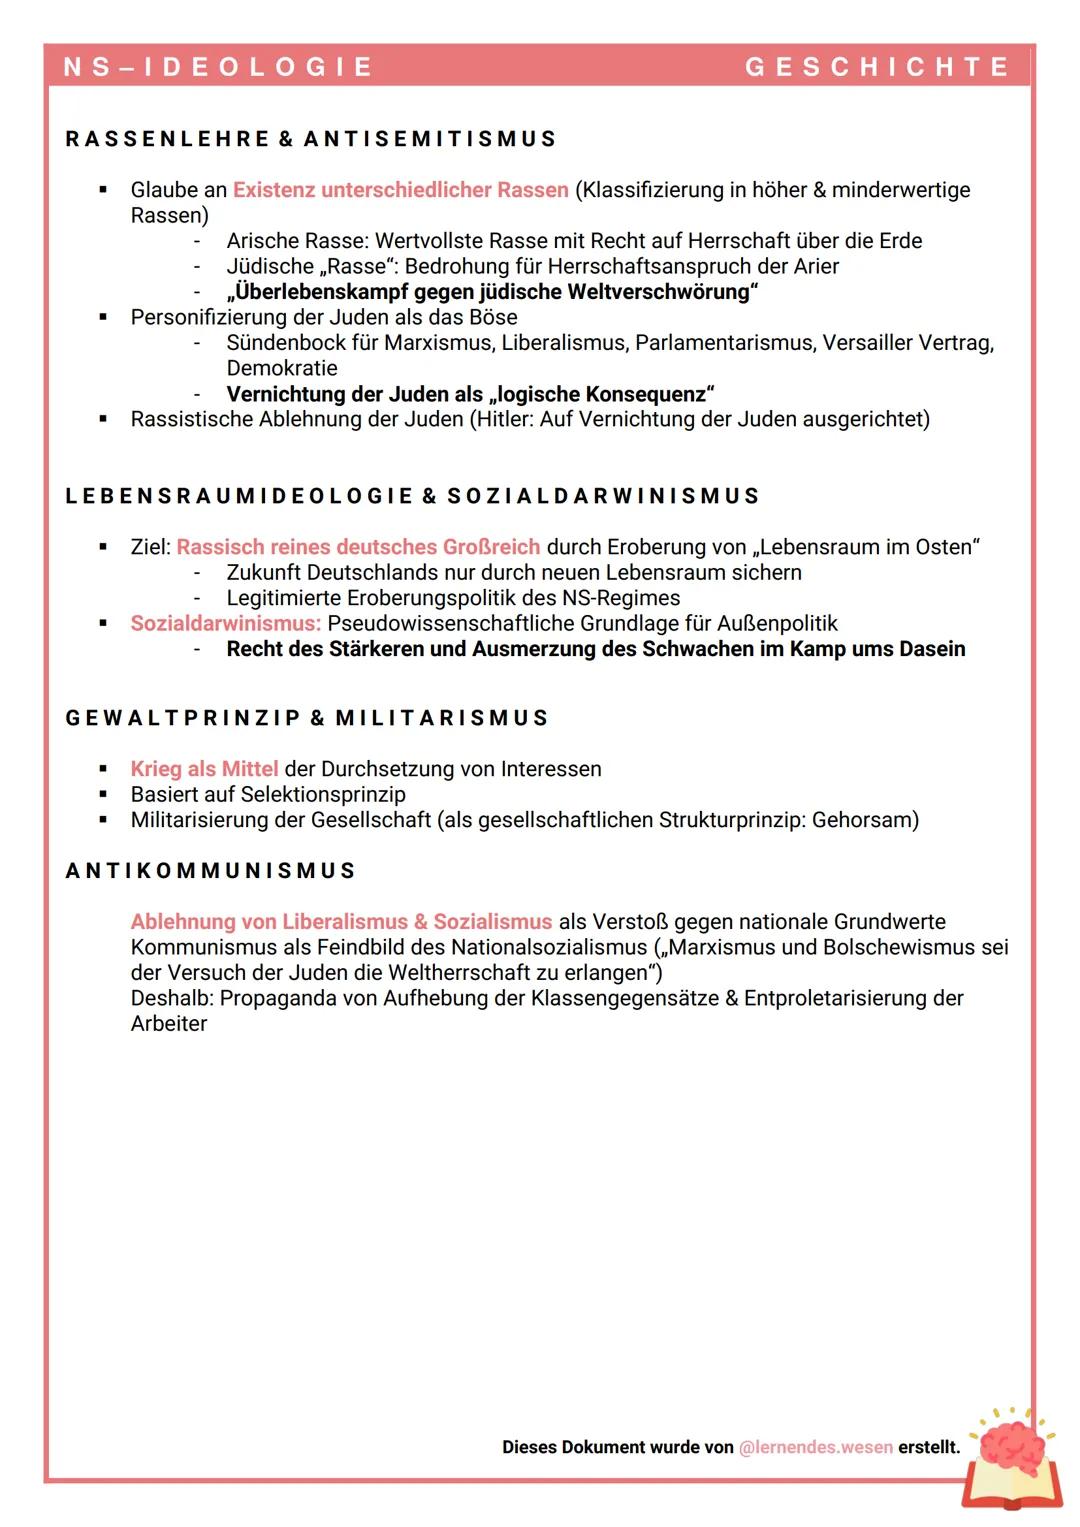 NS-IDEOLOGIE
Herrschaft durch Propaganda der Ideologien & Terror
Beschränkung der
Zugehörigkeit auf
wertvolle ,,arische"
Deutsche (Exklusion